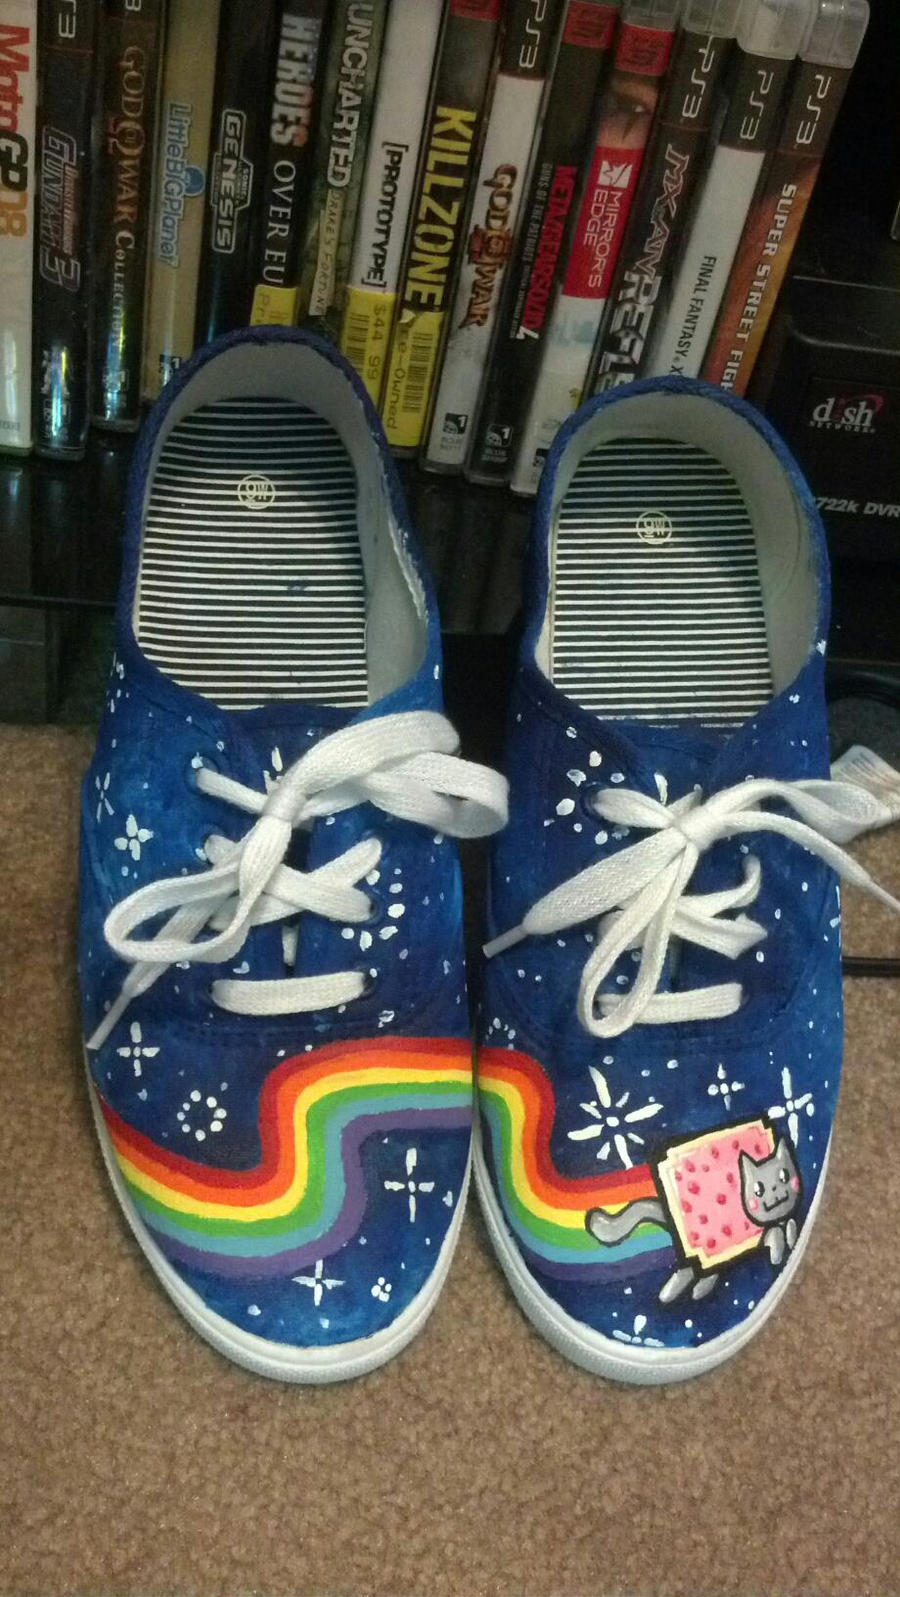 Nyan cat shoes 1